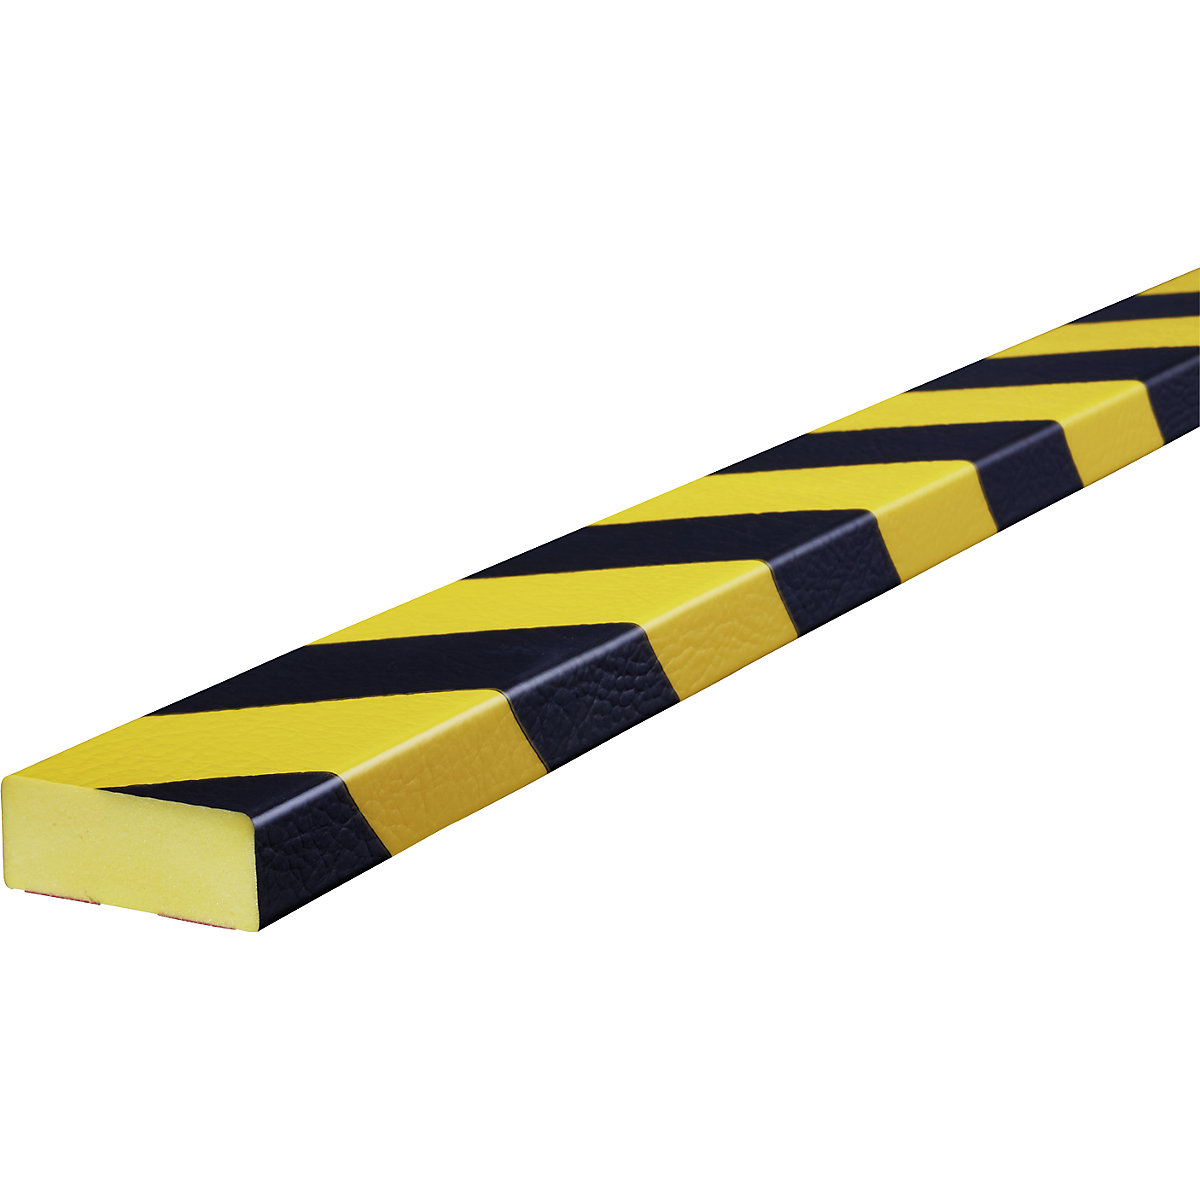 Proteção de superfícies Knuffi® – SHG, tipo D, 1 rolo de 5 m, preto/amarelo-18